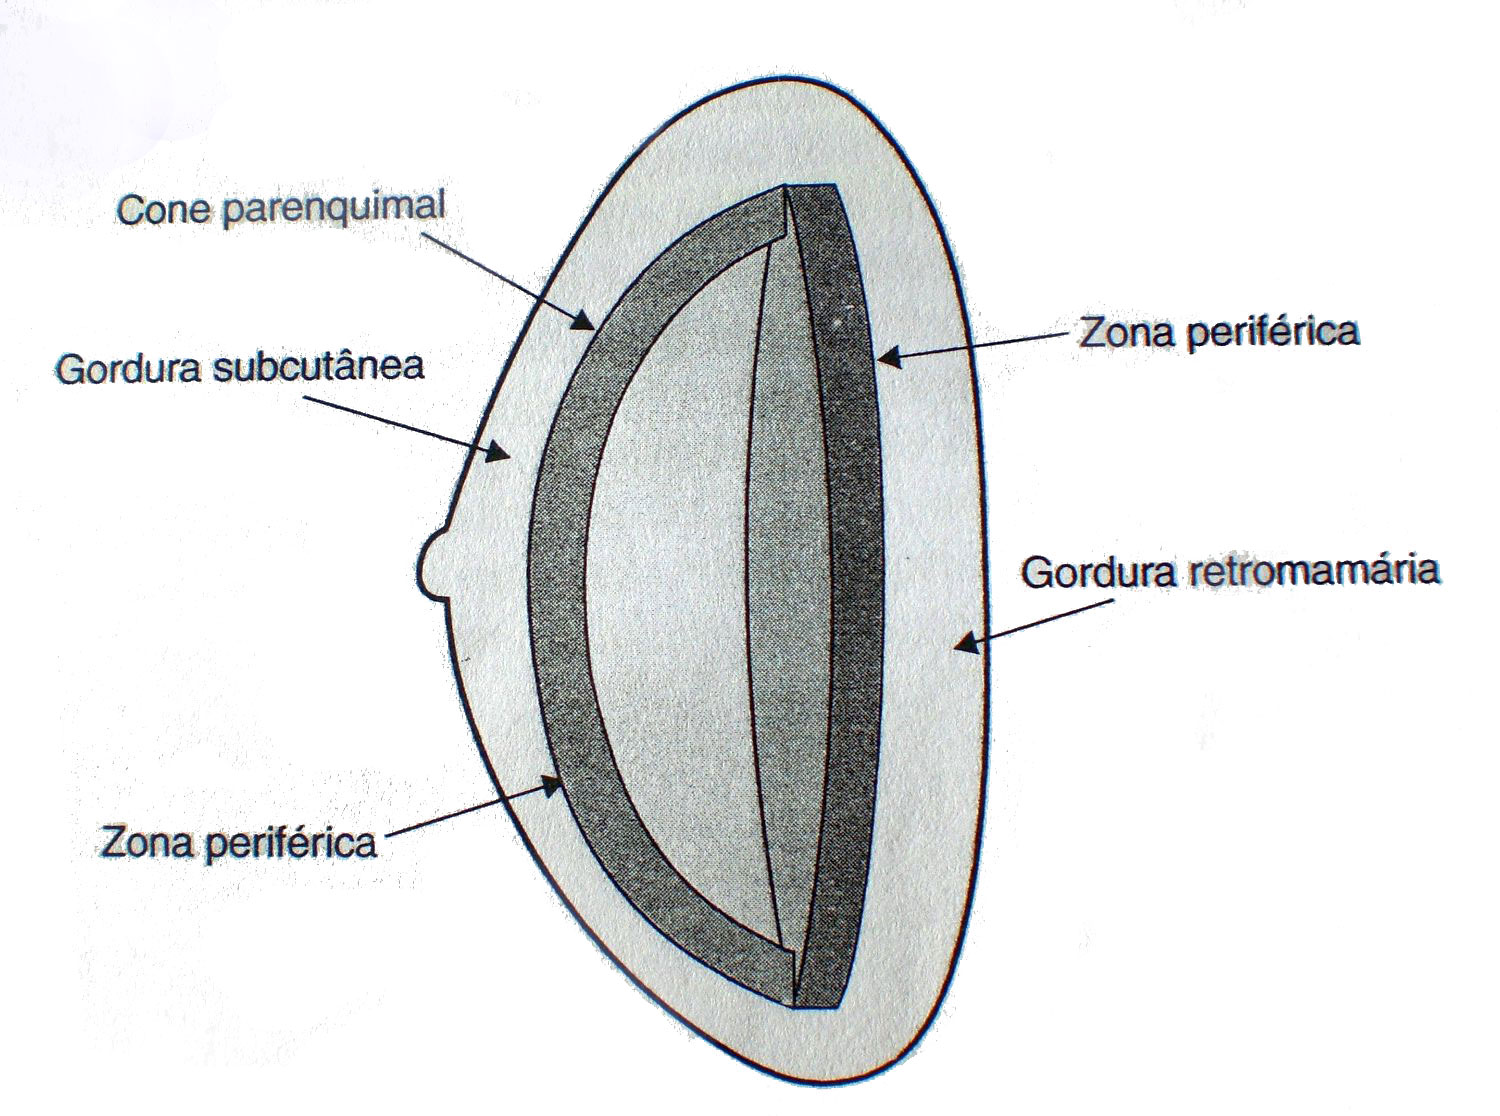 6 incidência do câncer (KOPANS, 2000). Figura 2.2: Representação esquemática da anatomia básica da mama destacando o ducto terminal e a unidade lobular do ducto terminal (ULDT).